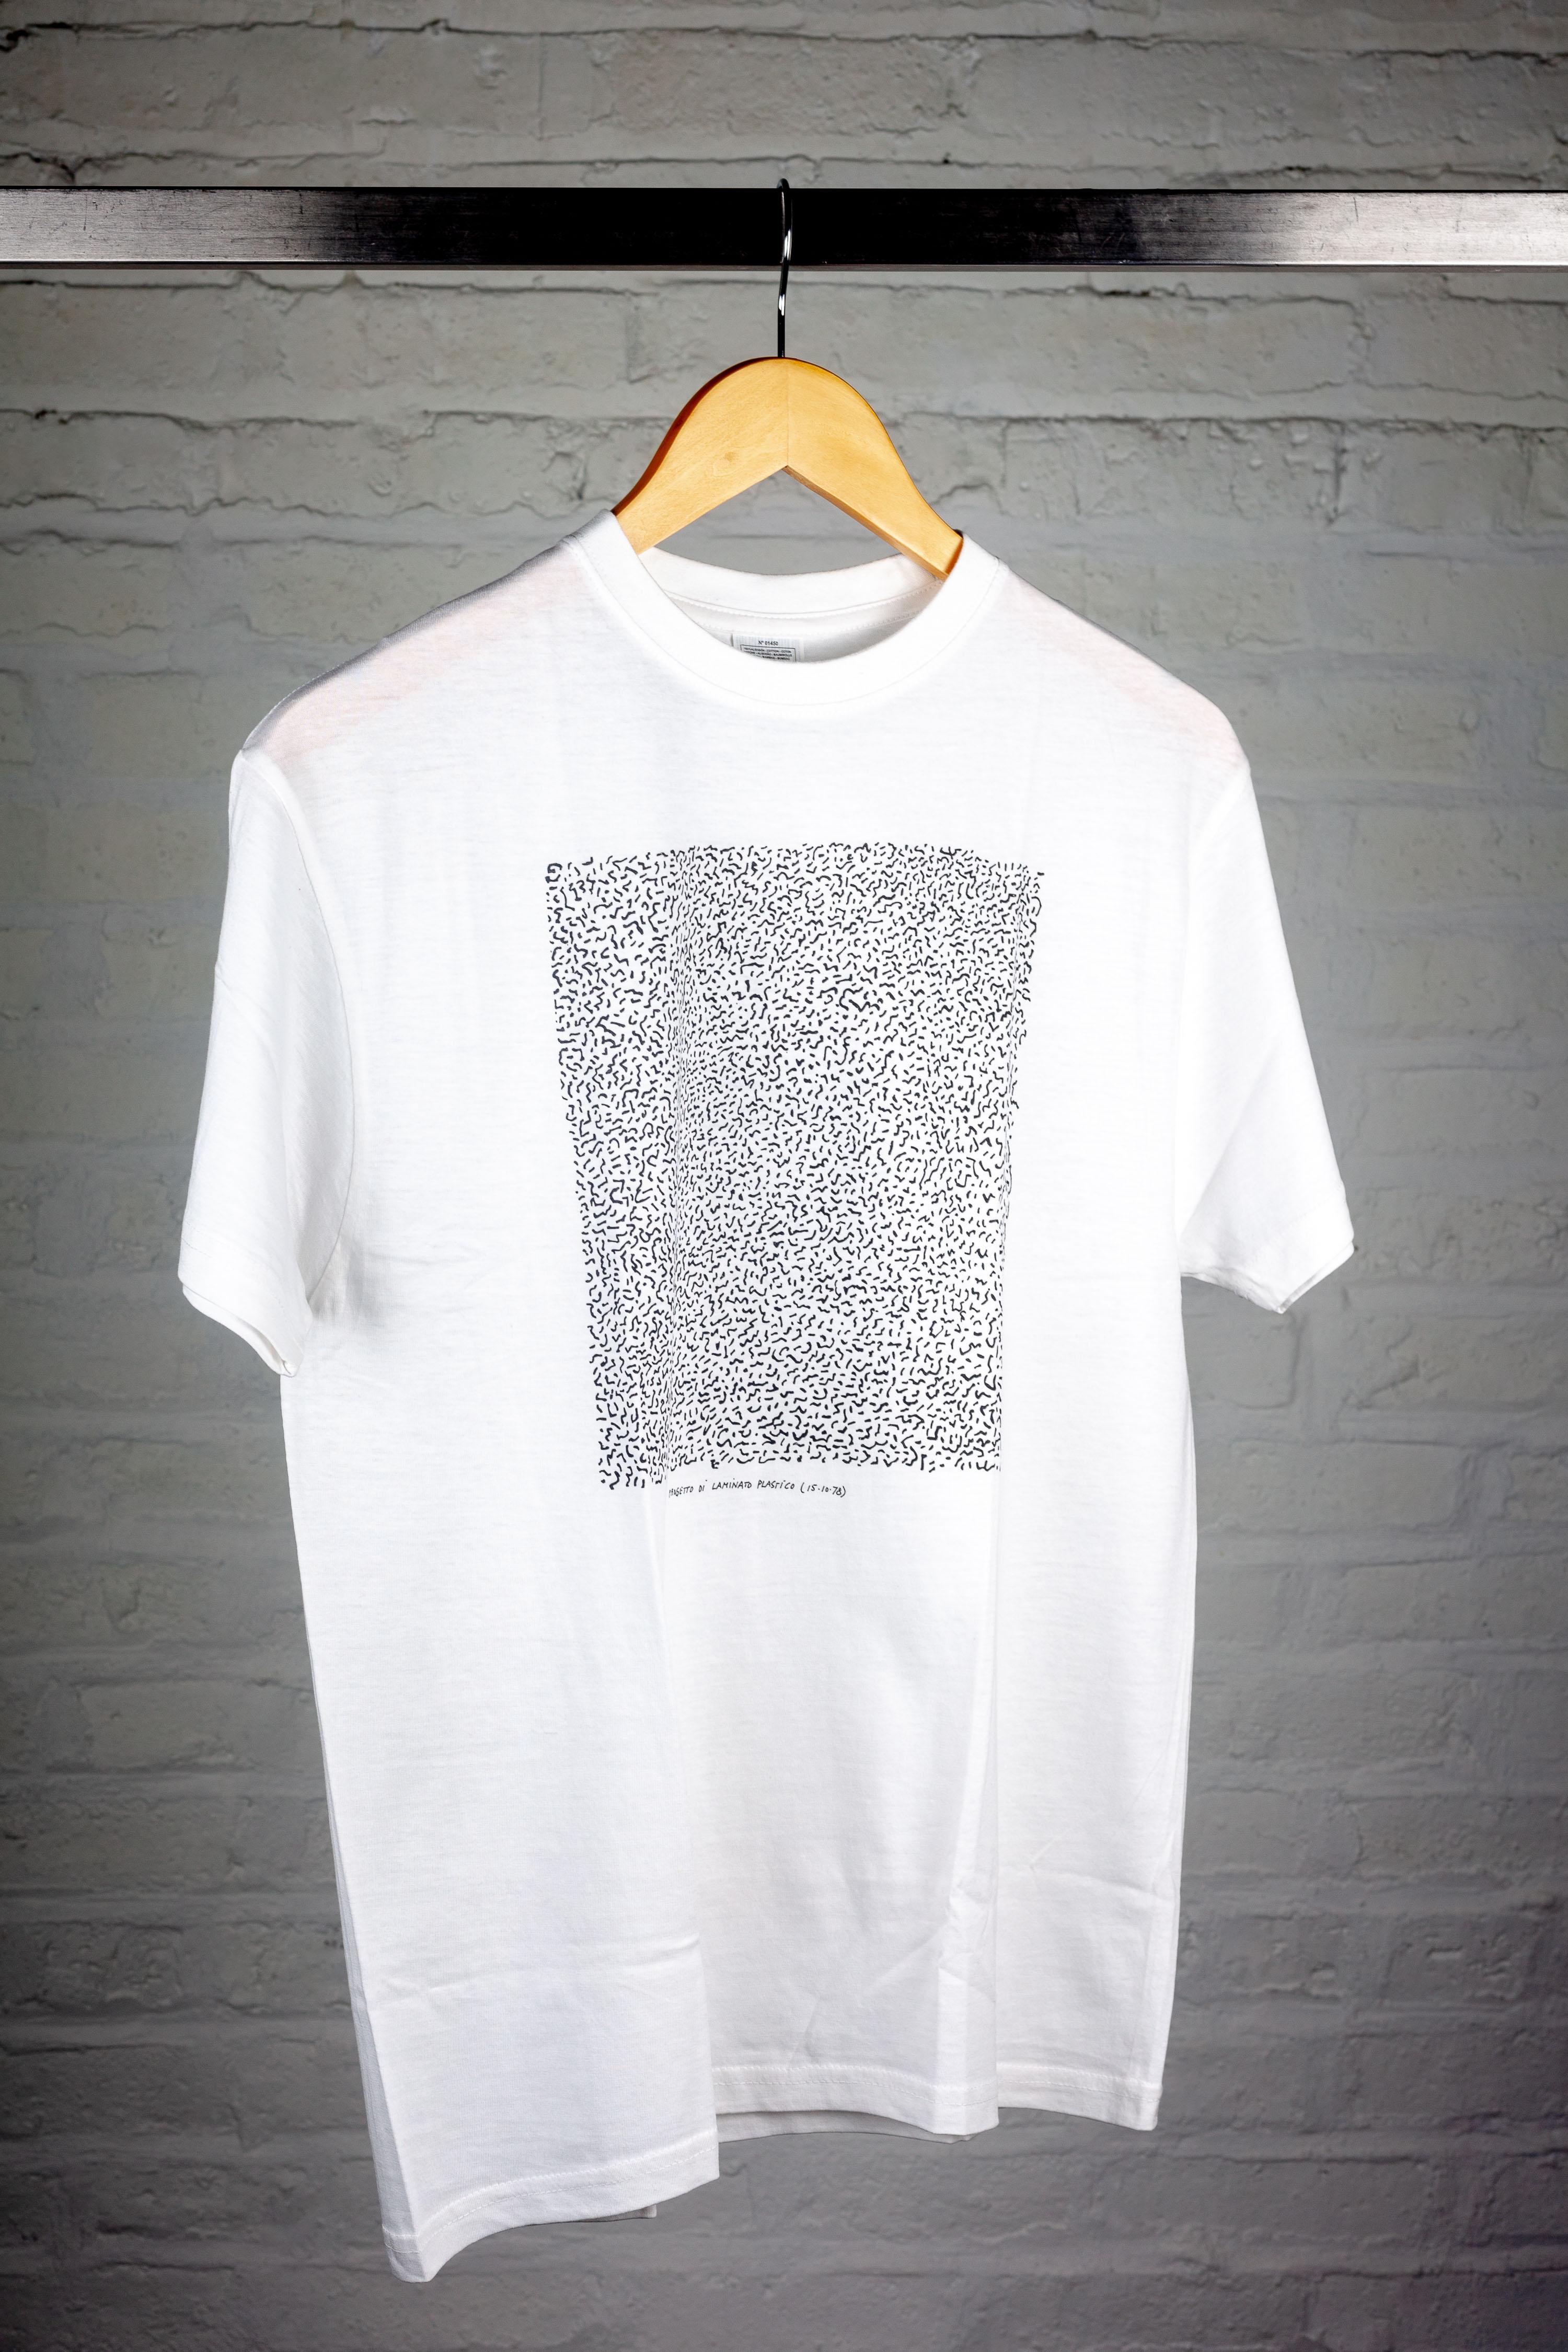 Dieses T-Shirt ist eine tragbare Hommage an das visionäre Design von Ettore Sottsass und zeigt eine Reproduktion der originalen handgezeichneten Skizze seines berühmten Bacterio-Musters. Erscheint in Verbindung mit der 2017 stattfindenden